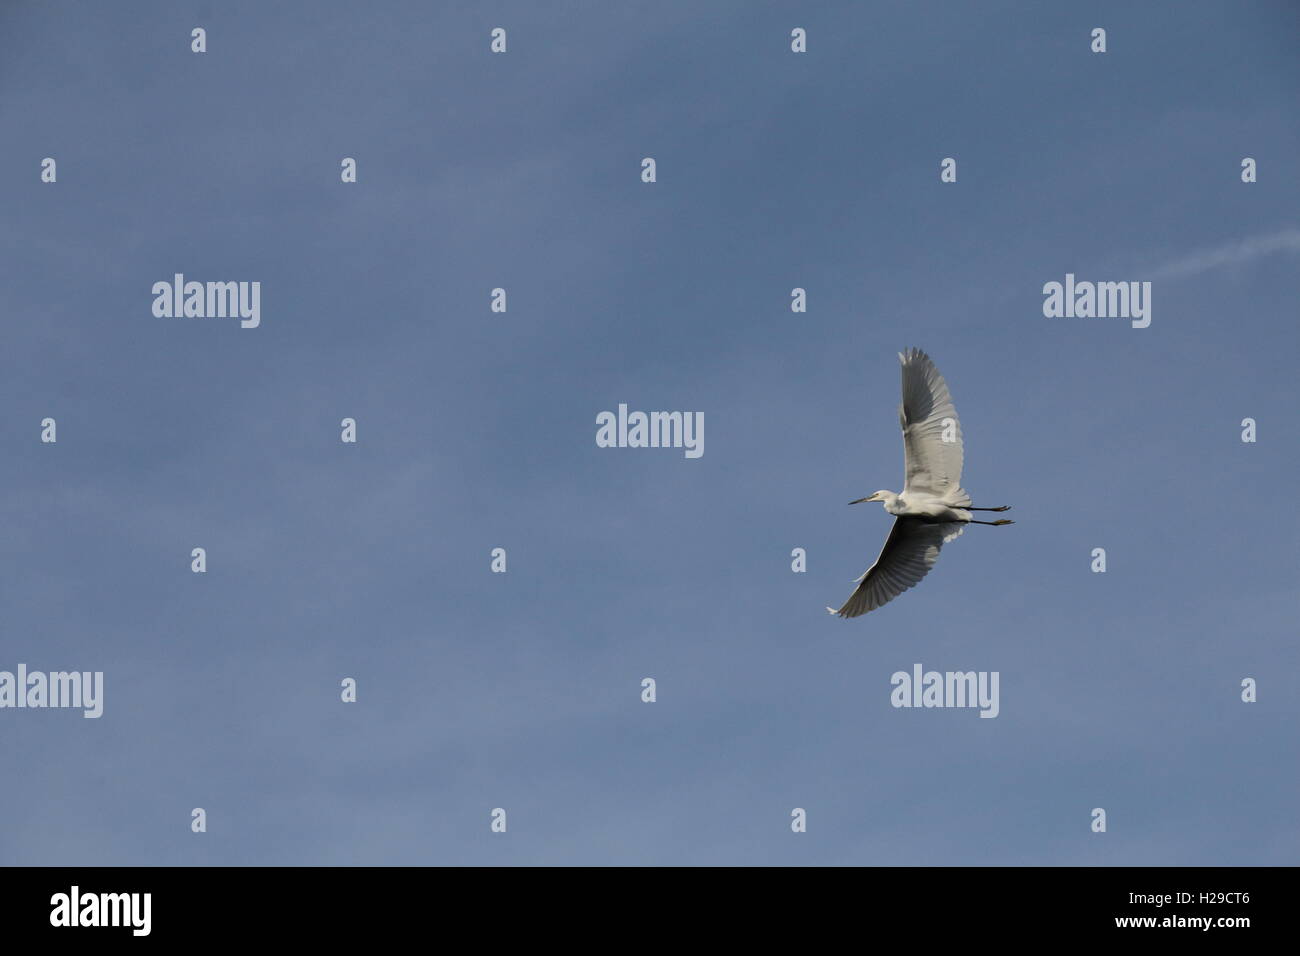 Little White Egret in flight against a blue sky Stock Photo